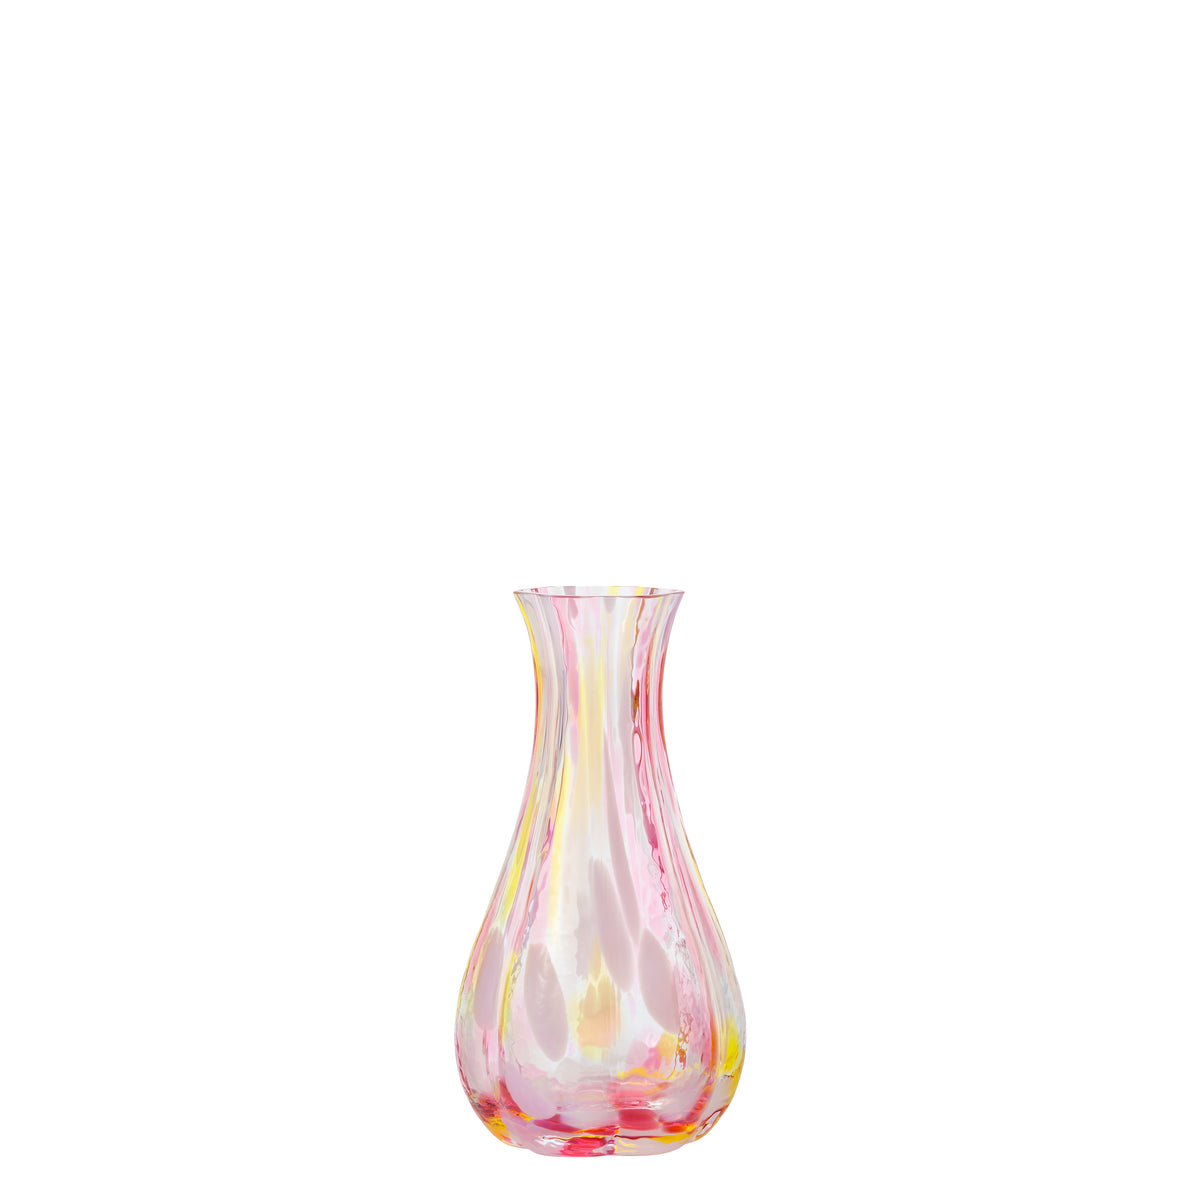 津軽びいどろ公式オンラインショップ | ガラスの花瓶・花器の商品一覧ページ – 津軽びいどろオンラインショップ